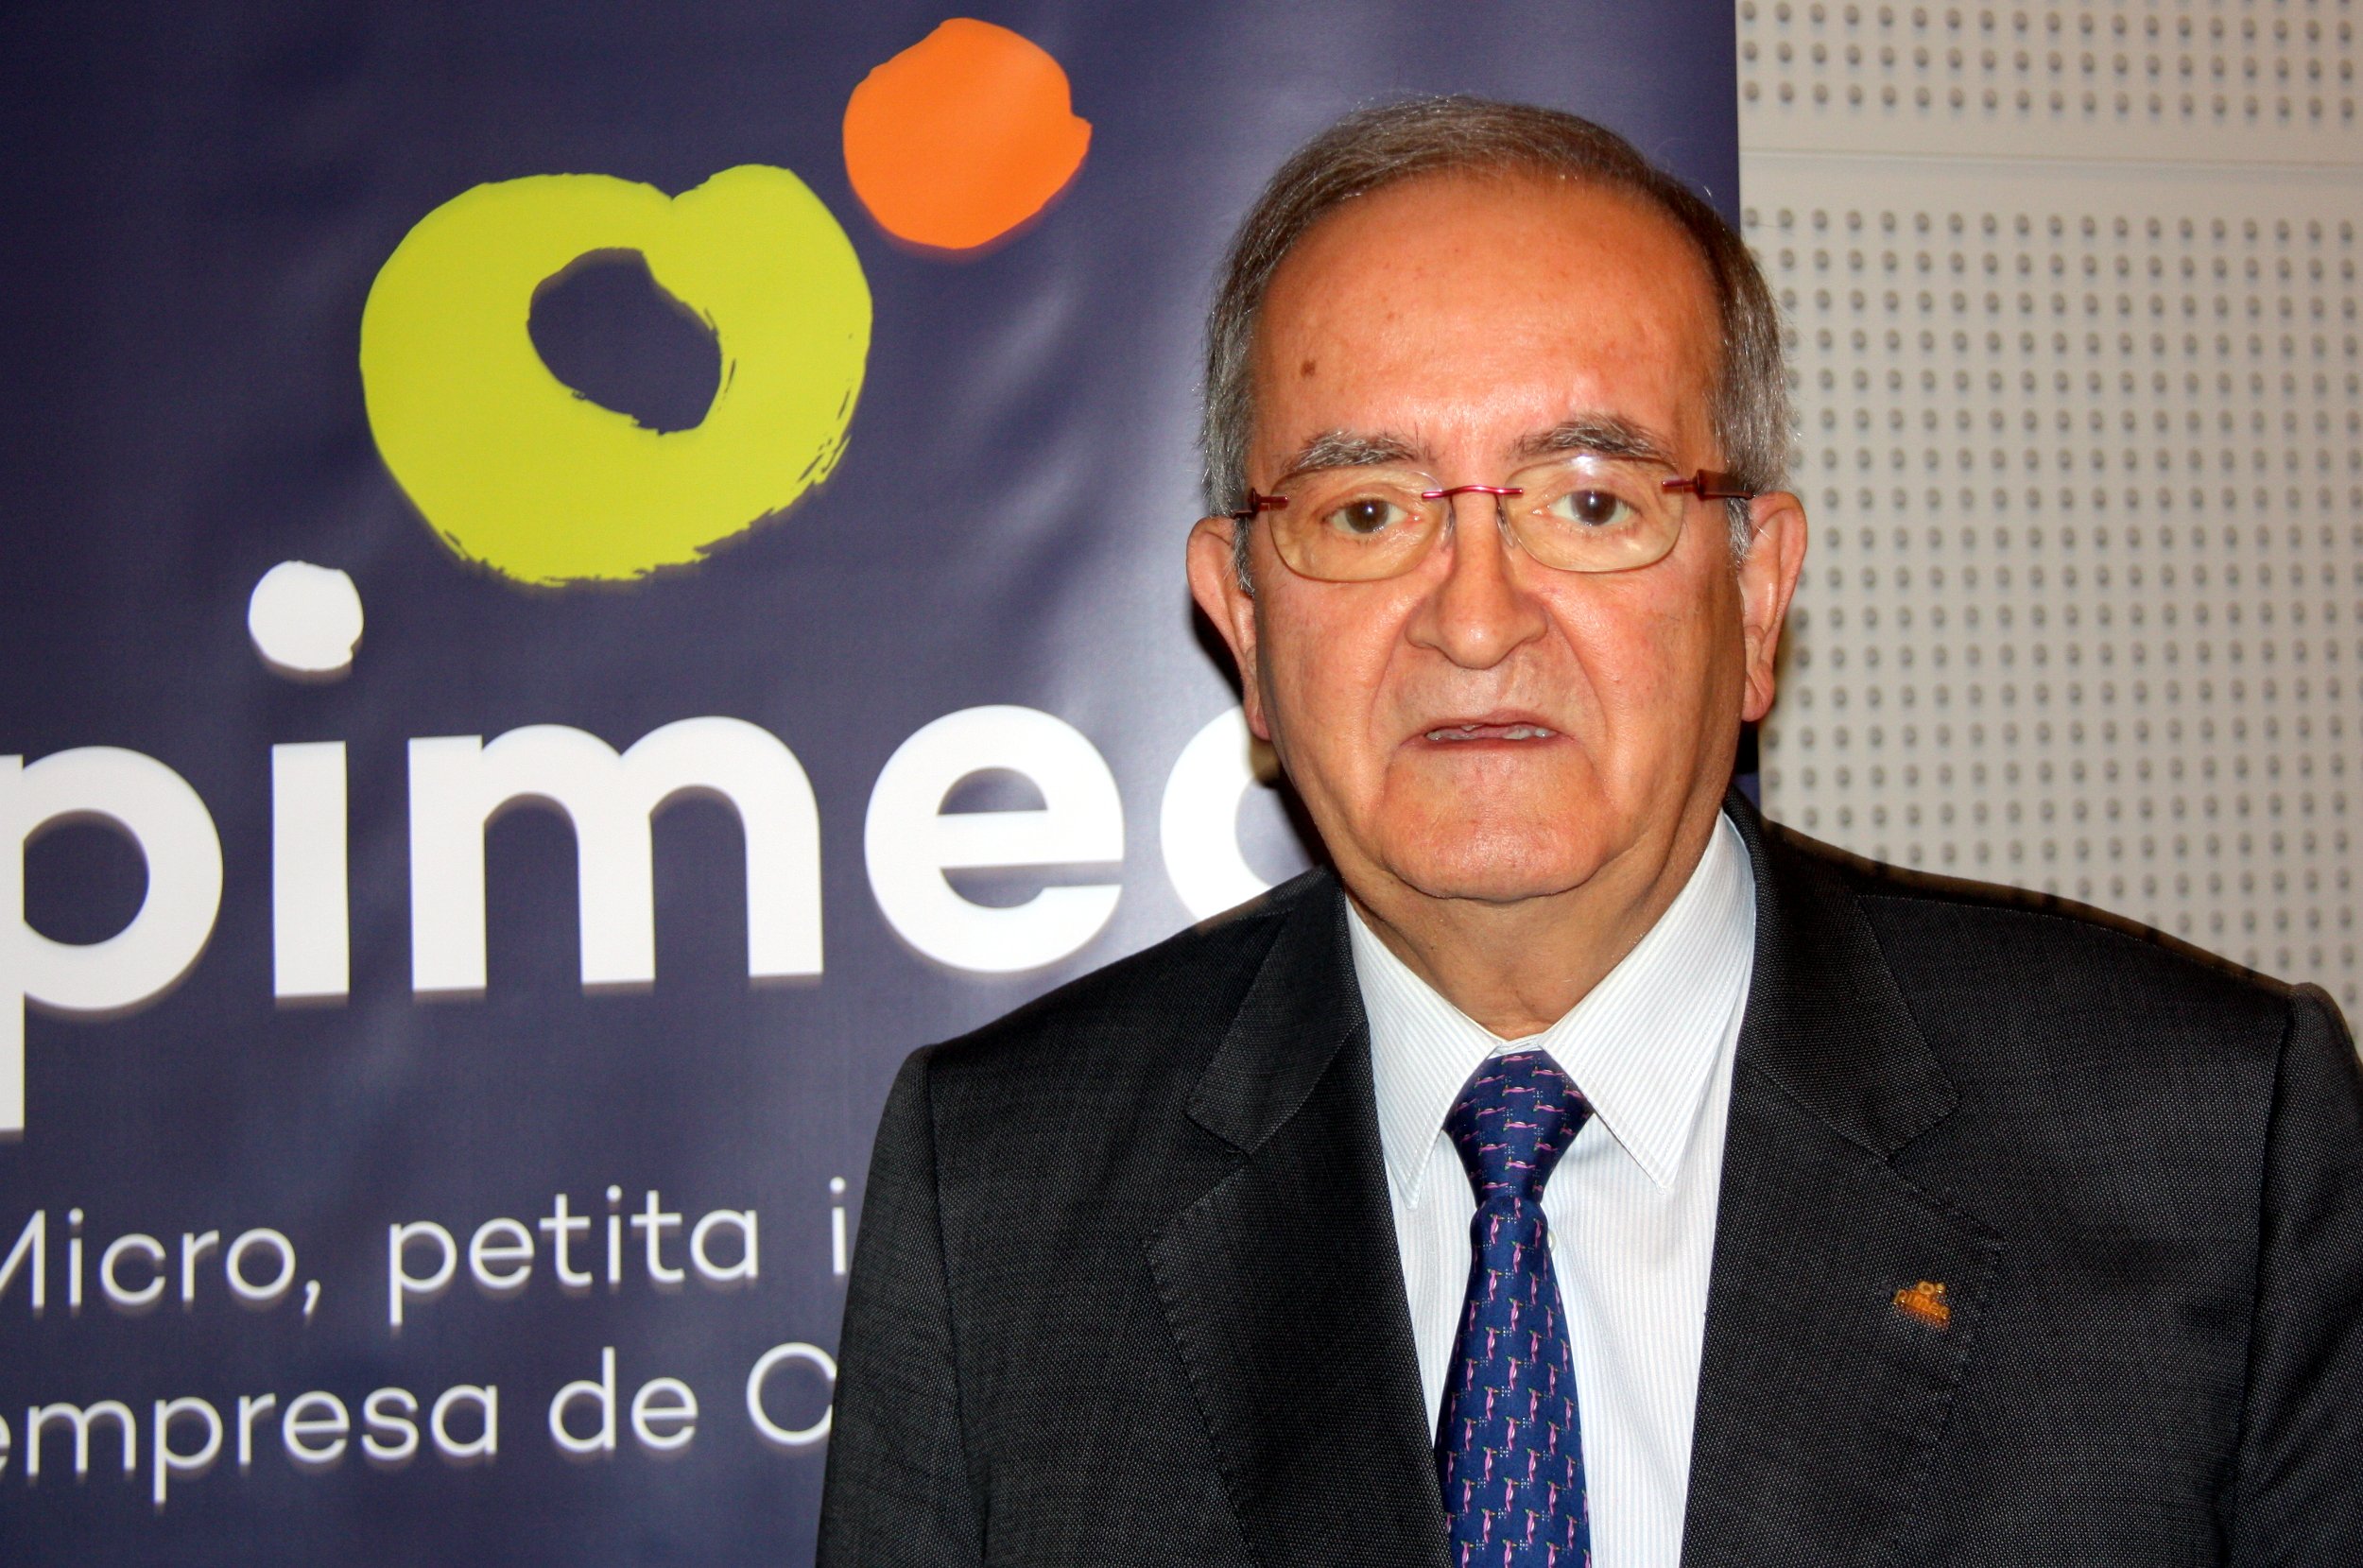 Pimec defiende el derecho a decidir con un "referéndum acordado"